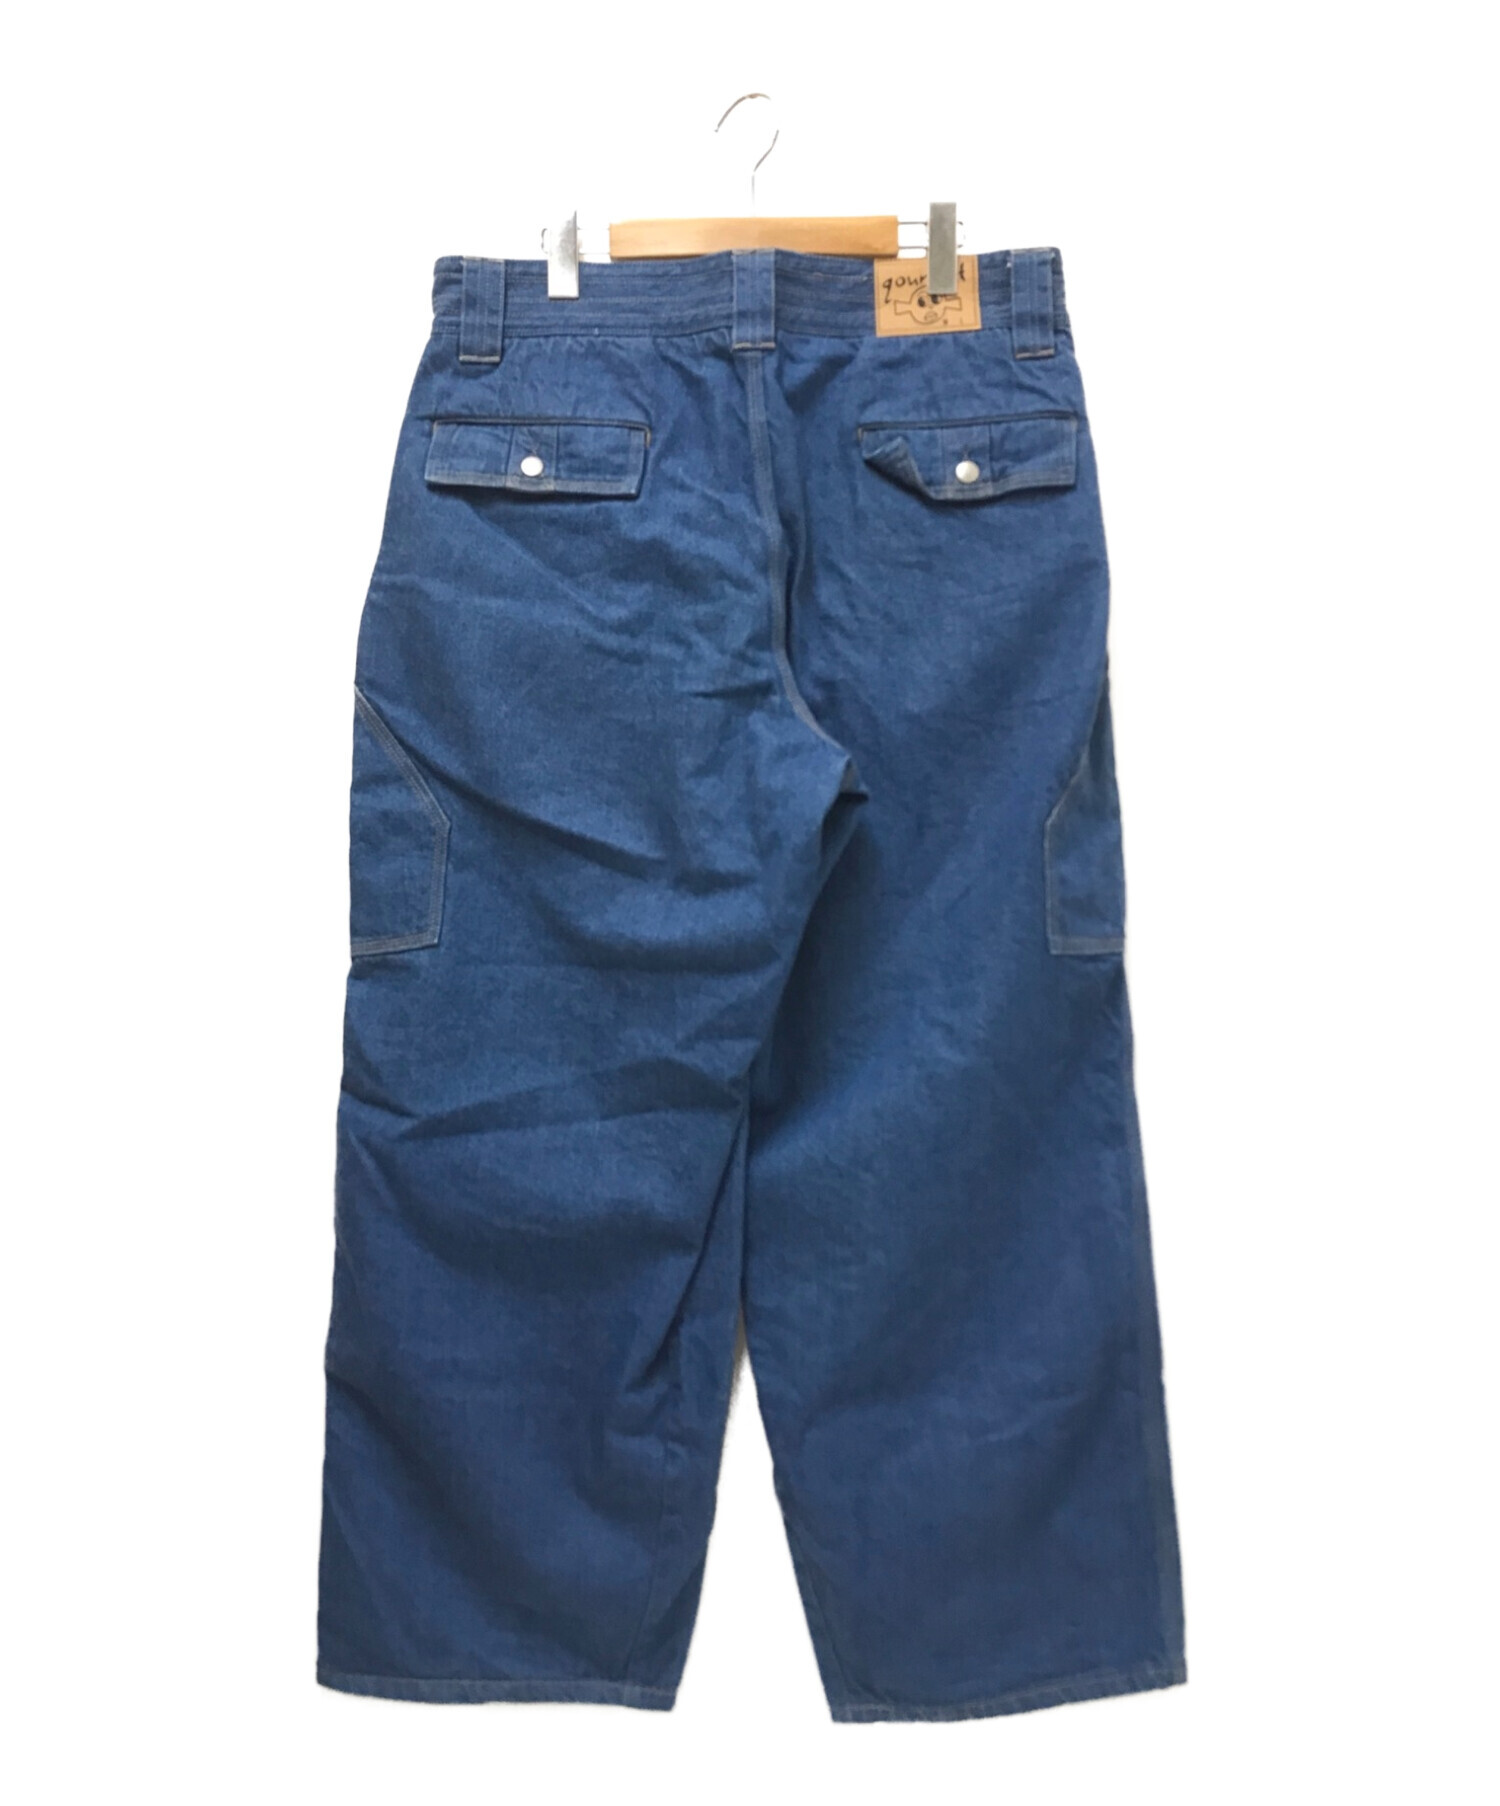 中古・古着通販】gourmet jeans (グルメジーンズ) TYPE2/BUSH デニム ...